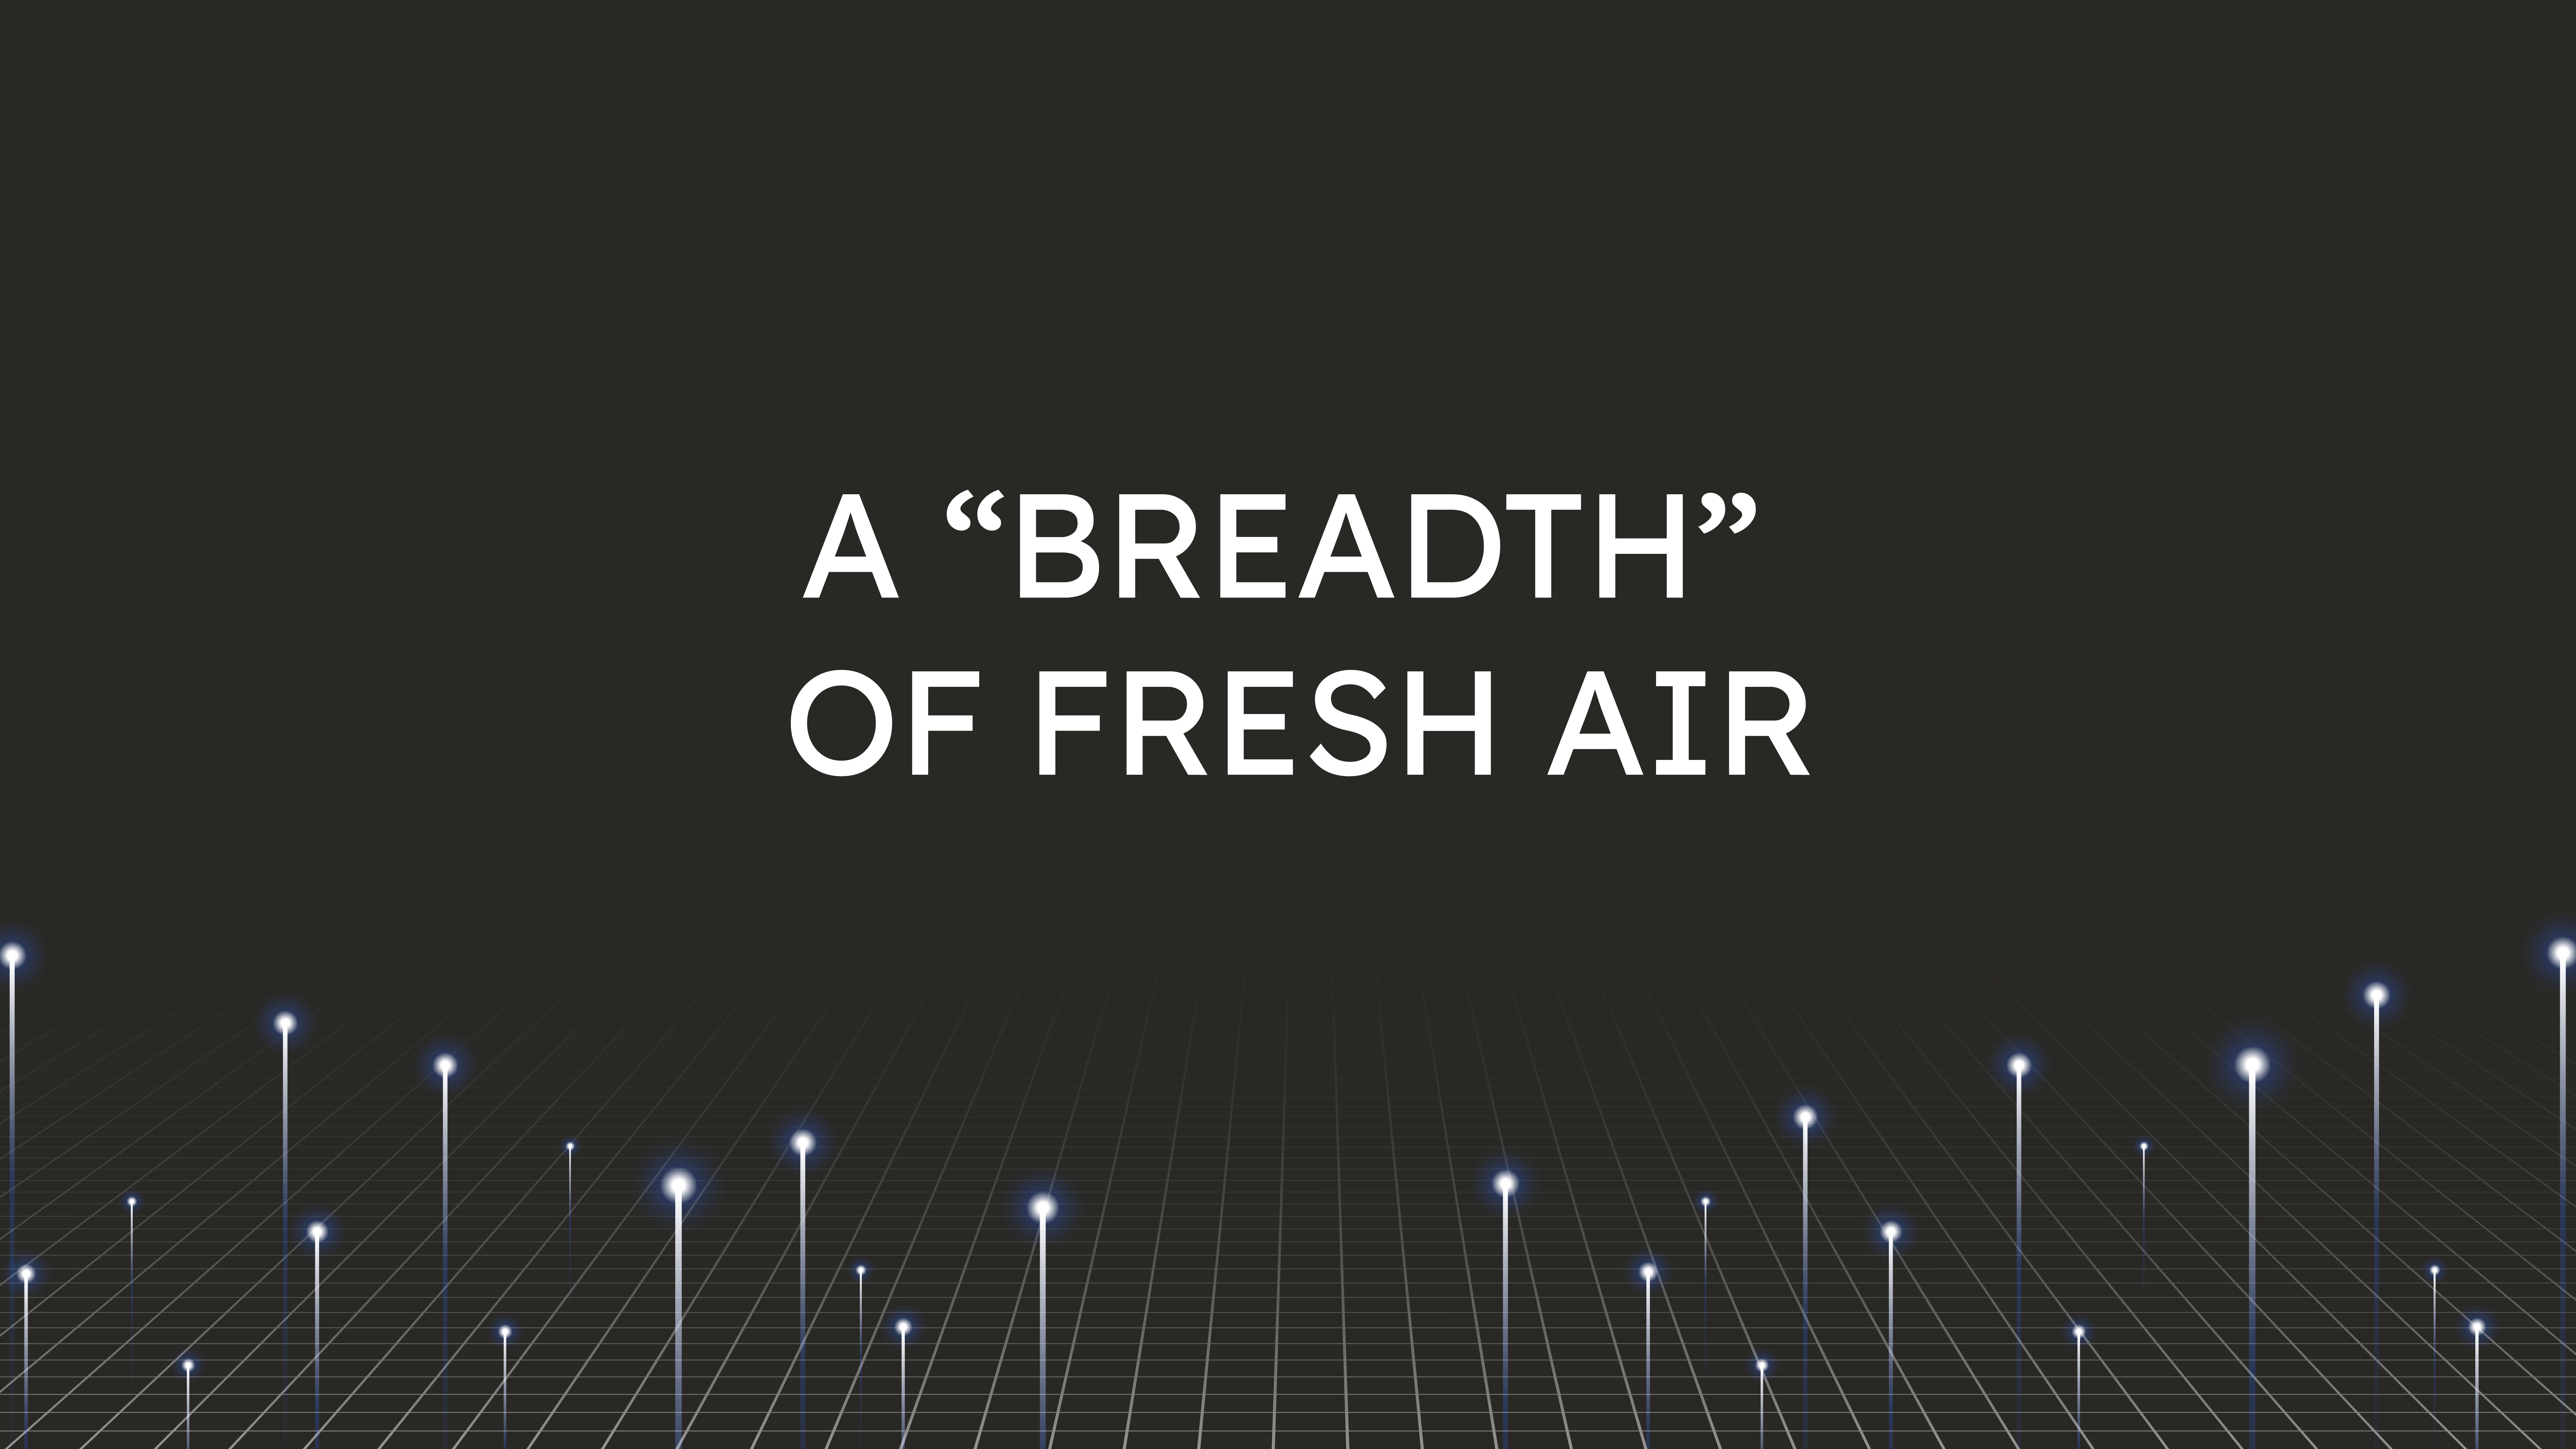 A “Breadth”  of Fresh Air